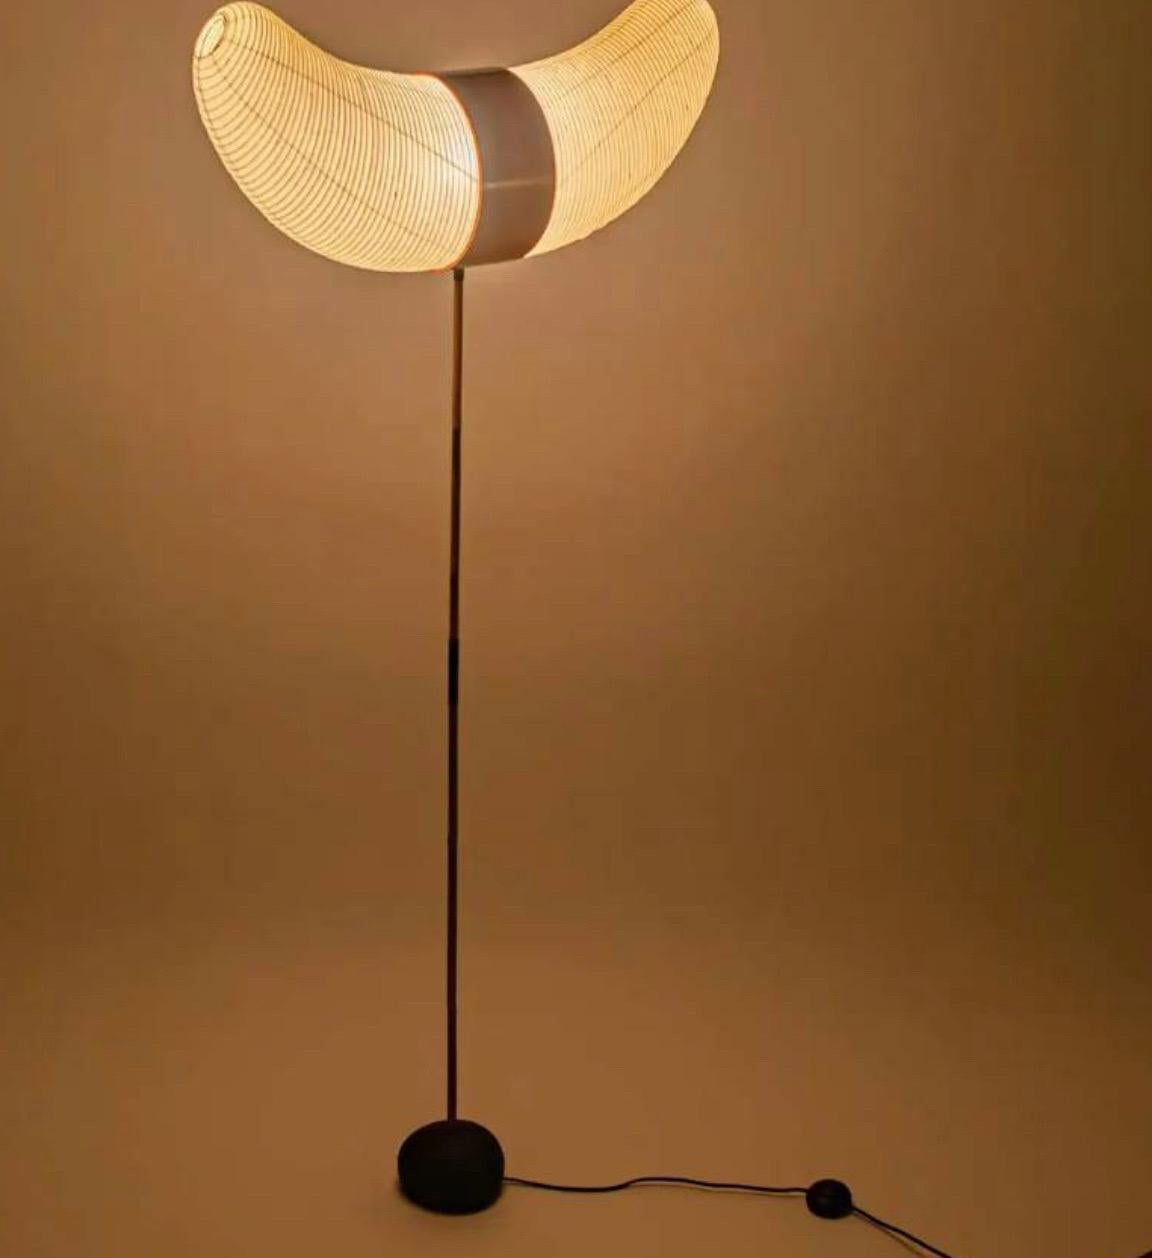 
Les sculptures Akari Light d'Isamu Noguchi sont considérées comme des icônes du design moderne des années 1950. Conçues par Noguchi à partir de 1951 et fabriquées à la main depuis un demi-siècle par le fabricant d'origine à Gifu, au Japon, les